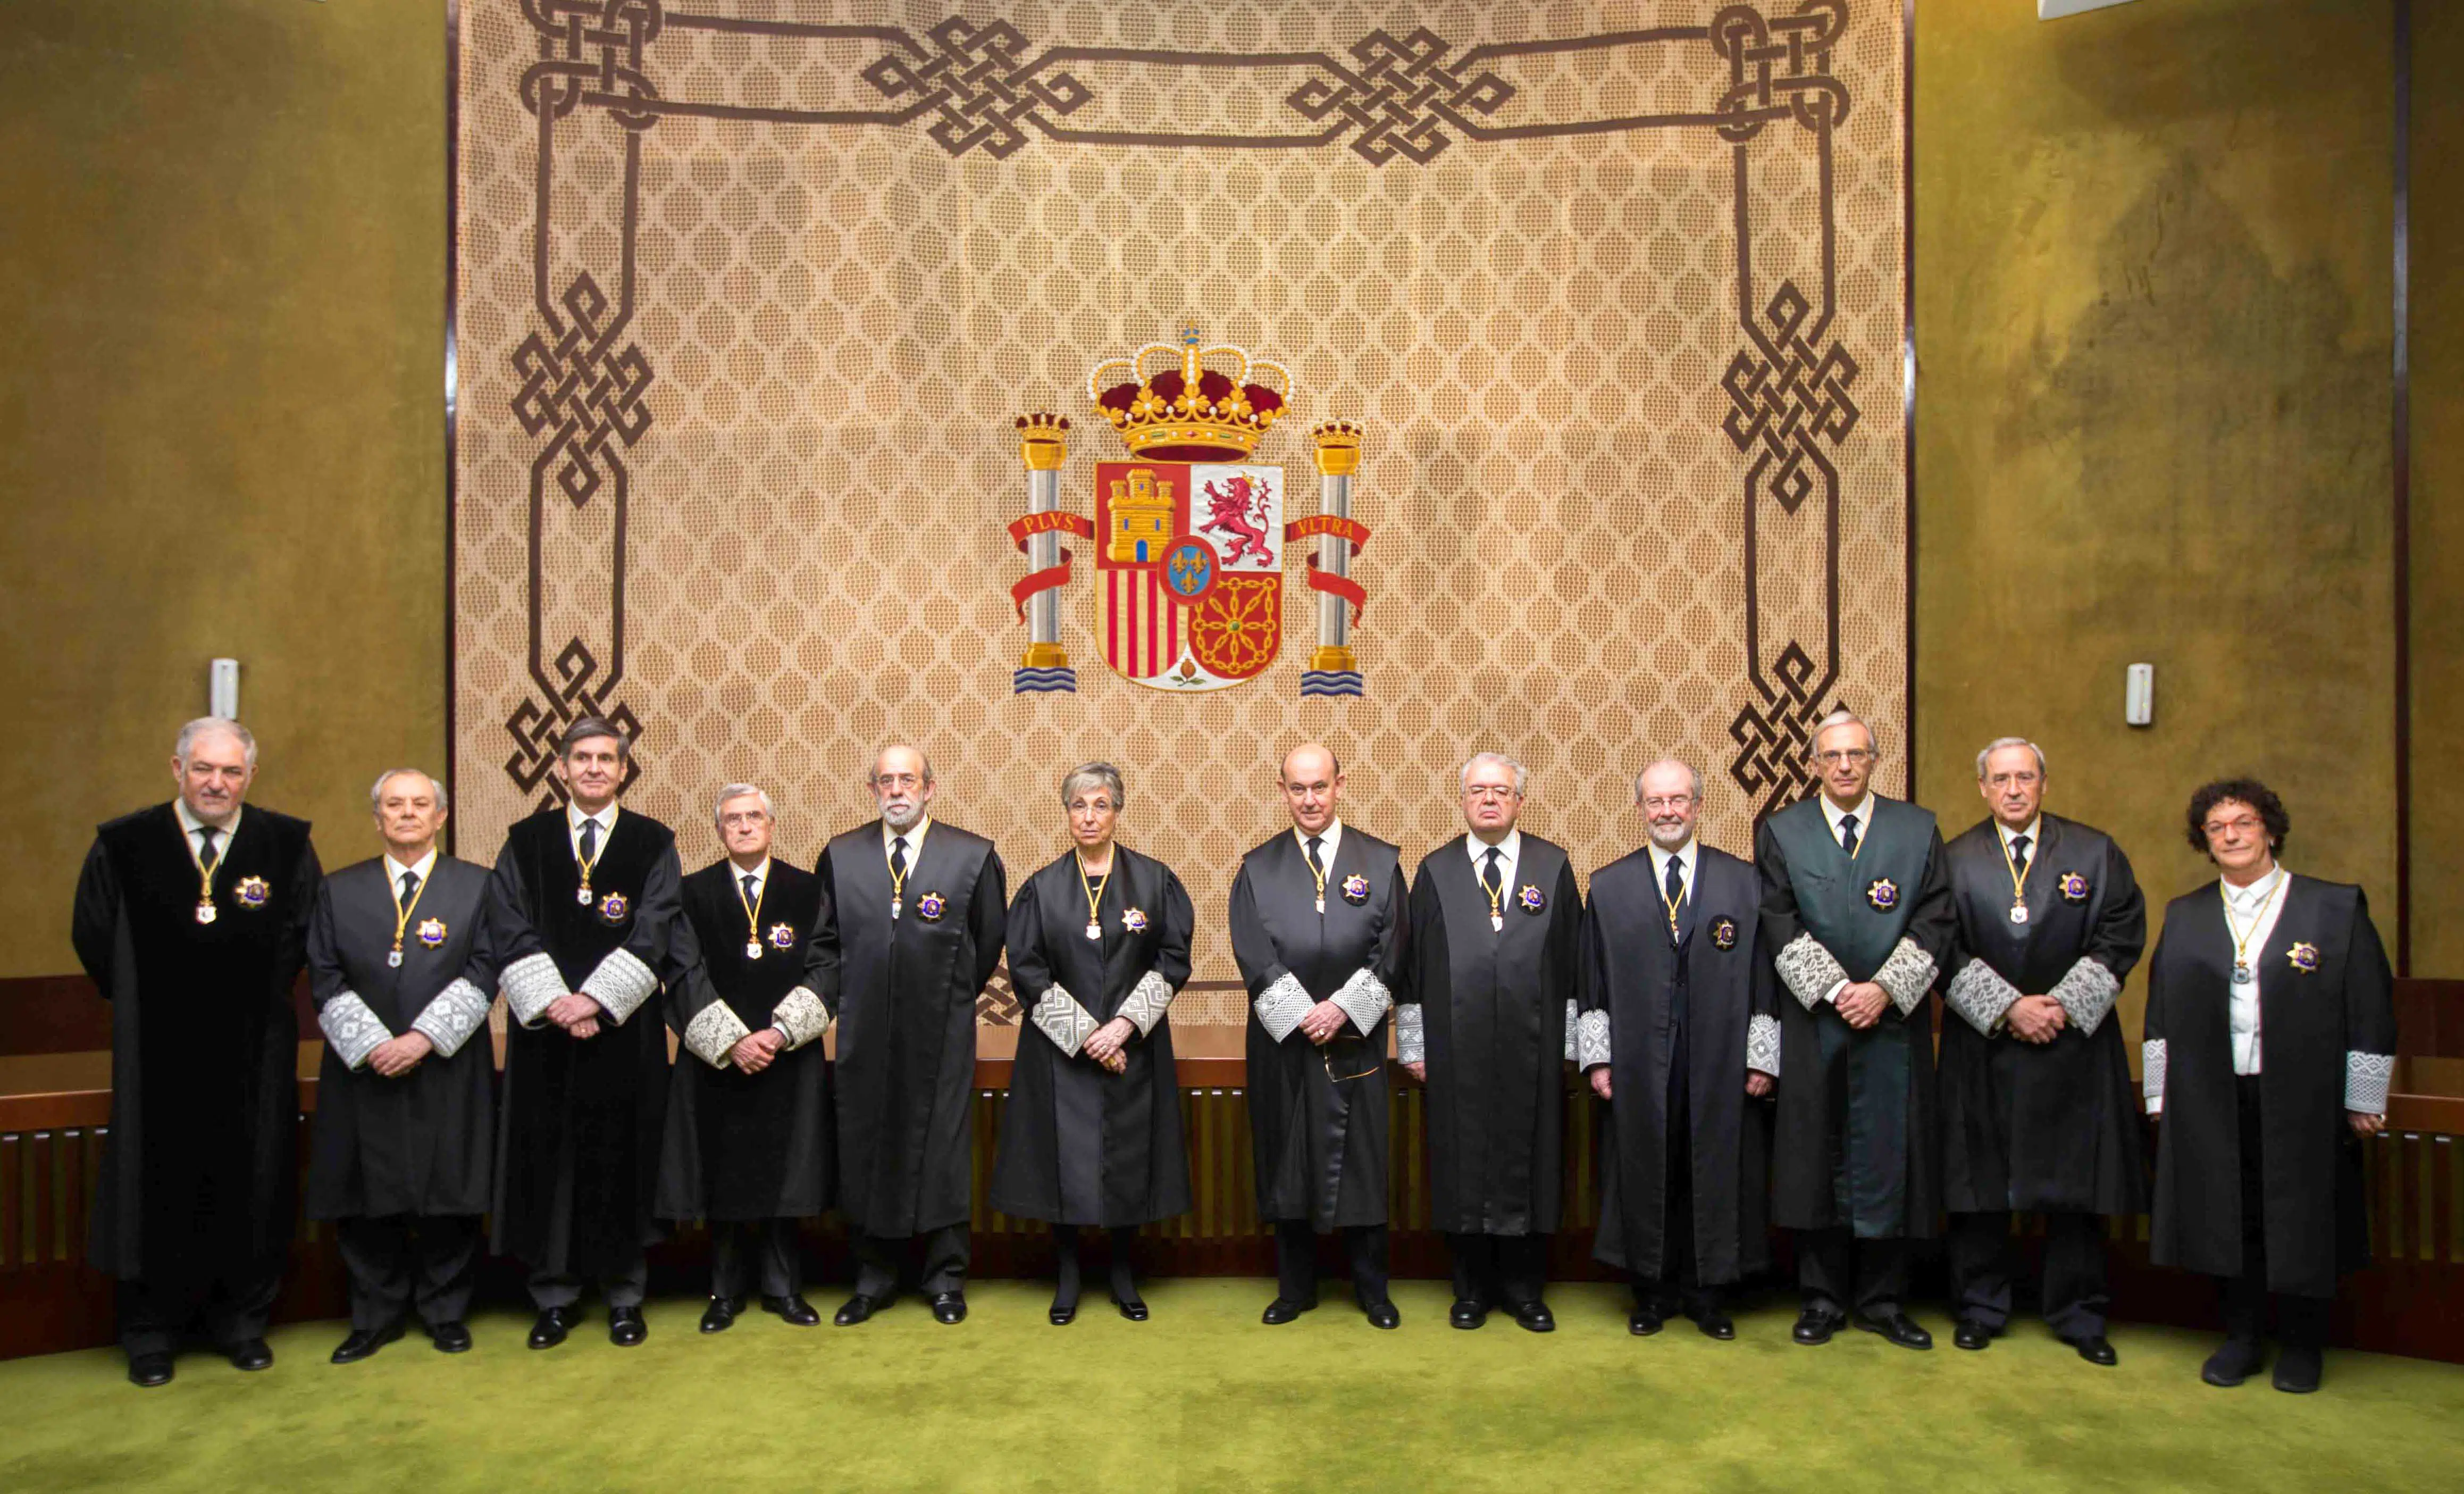 Por unanimidad, el Constitucional prohibe investir telemáticamente a Puigdemont y el voto delegado de los fugados